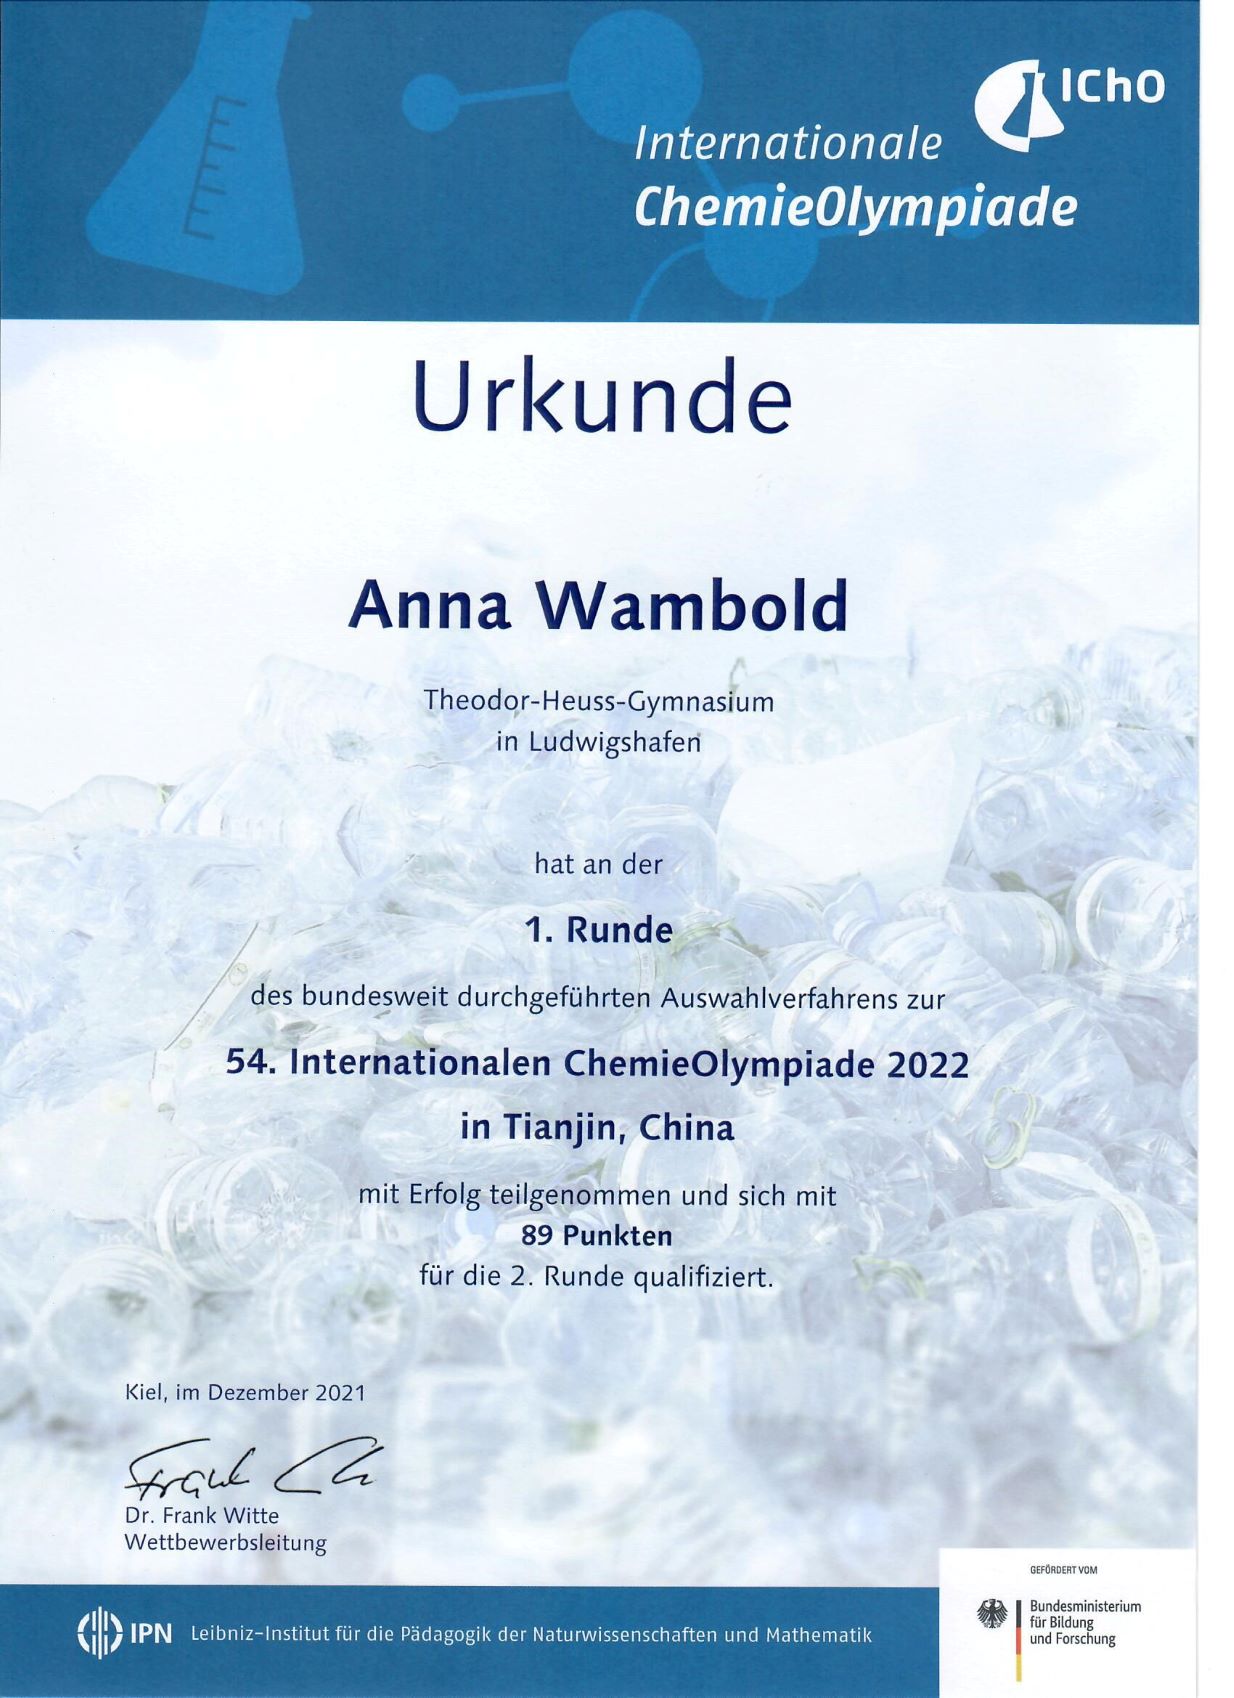 IChO 2022 Anna Wambold 1. Runde Quali 2. Runde